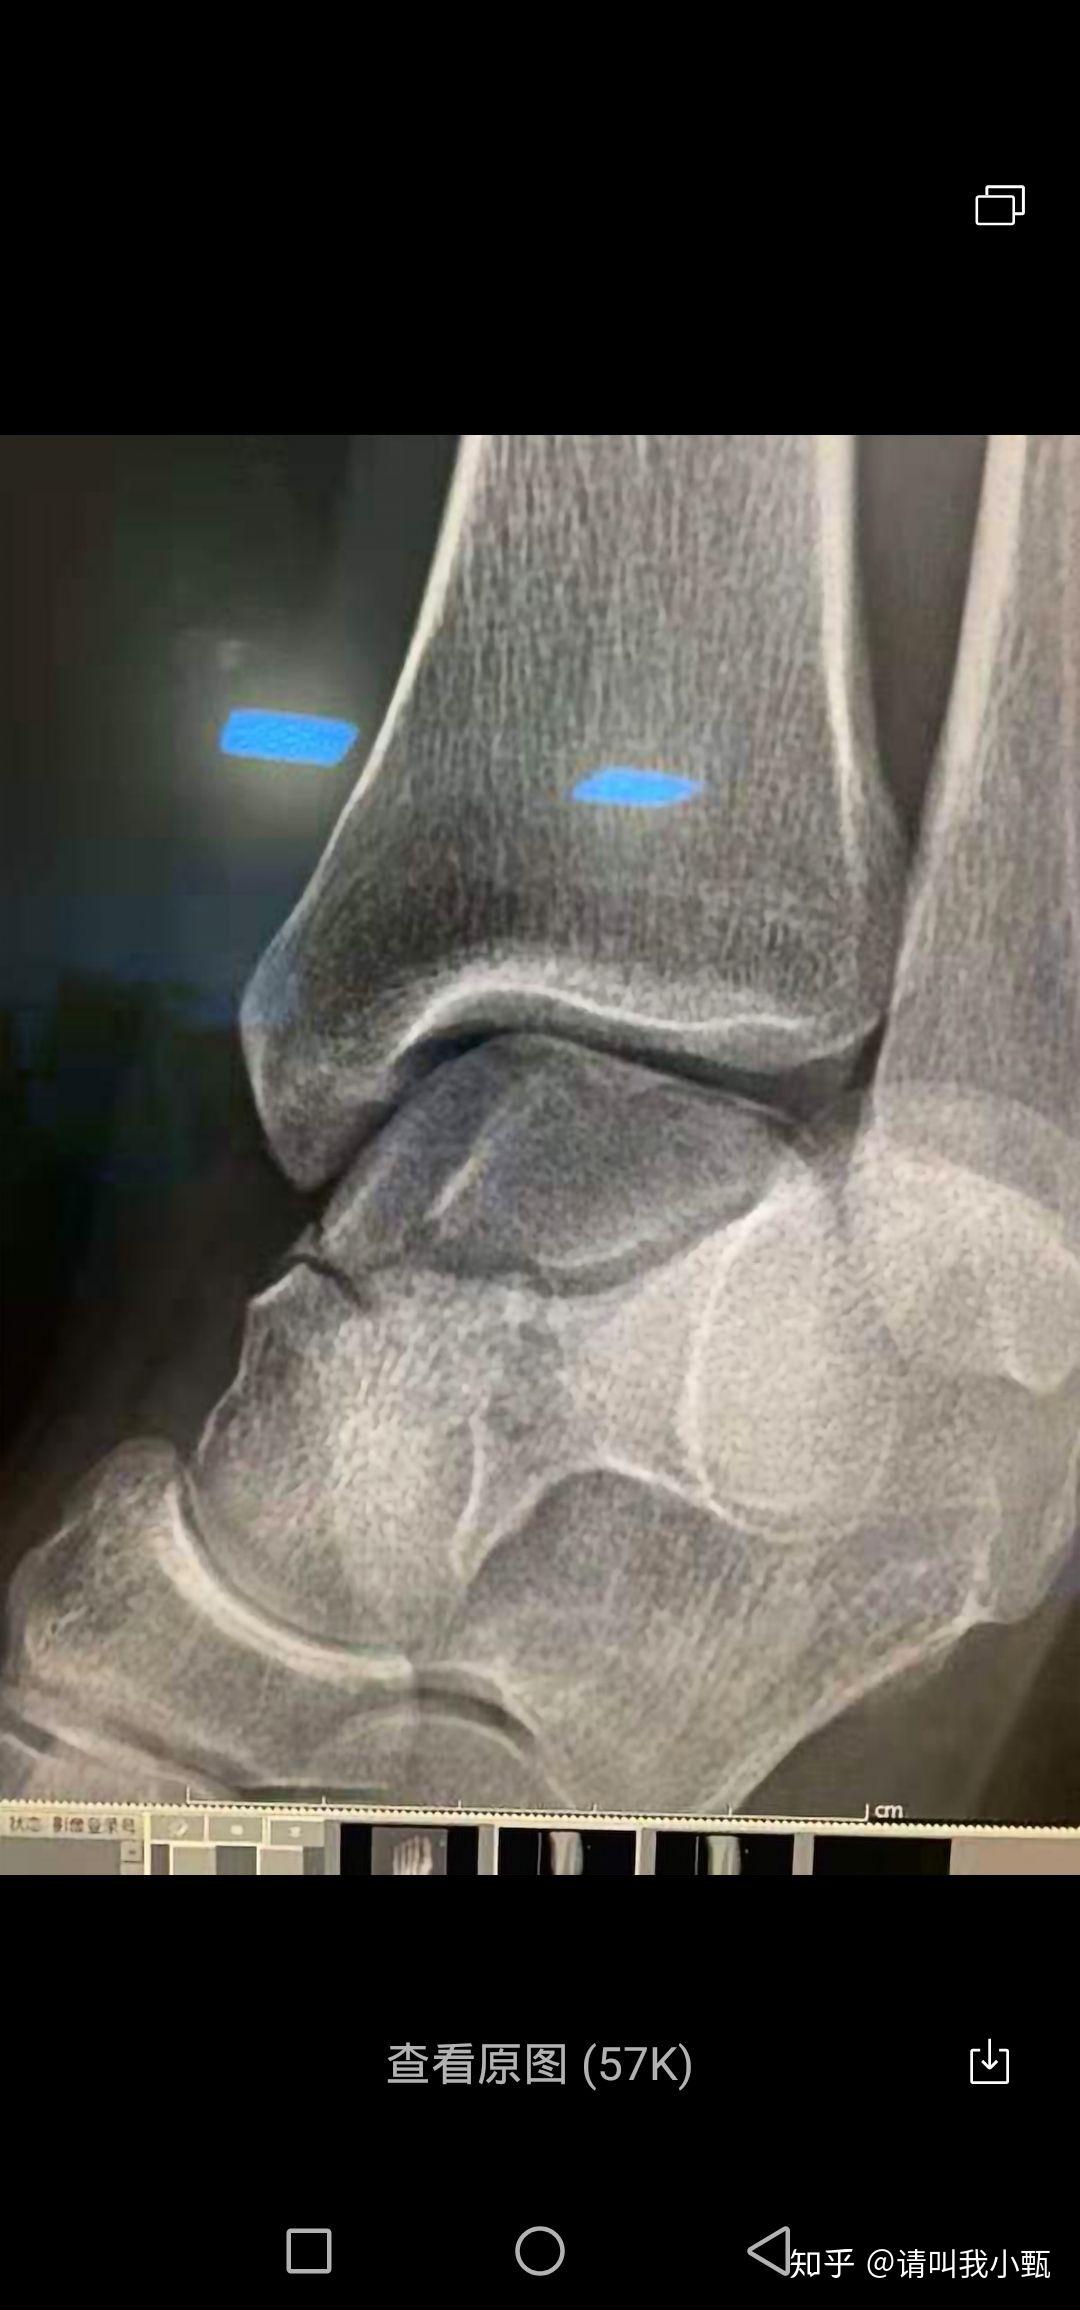 结果就是这个导致意外……左脚外踝撕脱骨折,距骨粉碎骨折